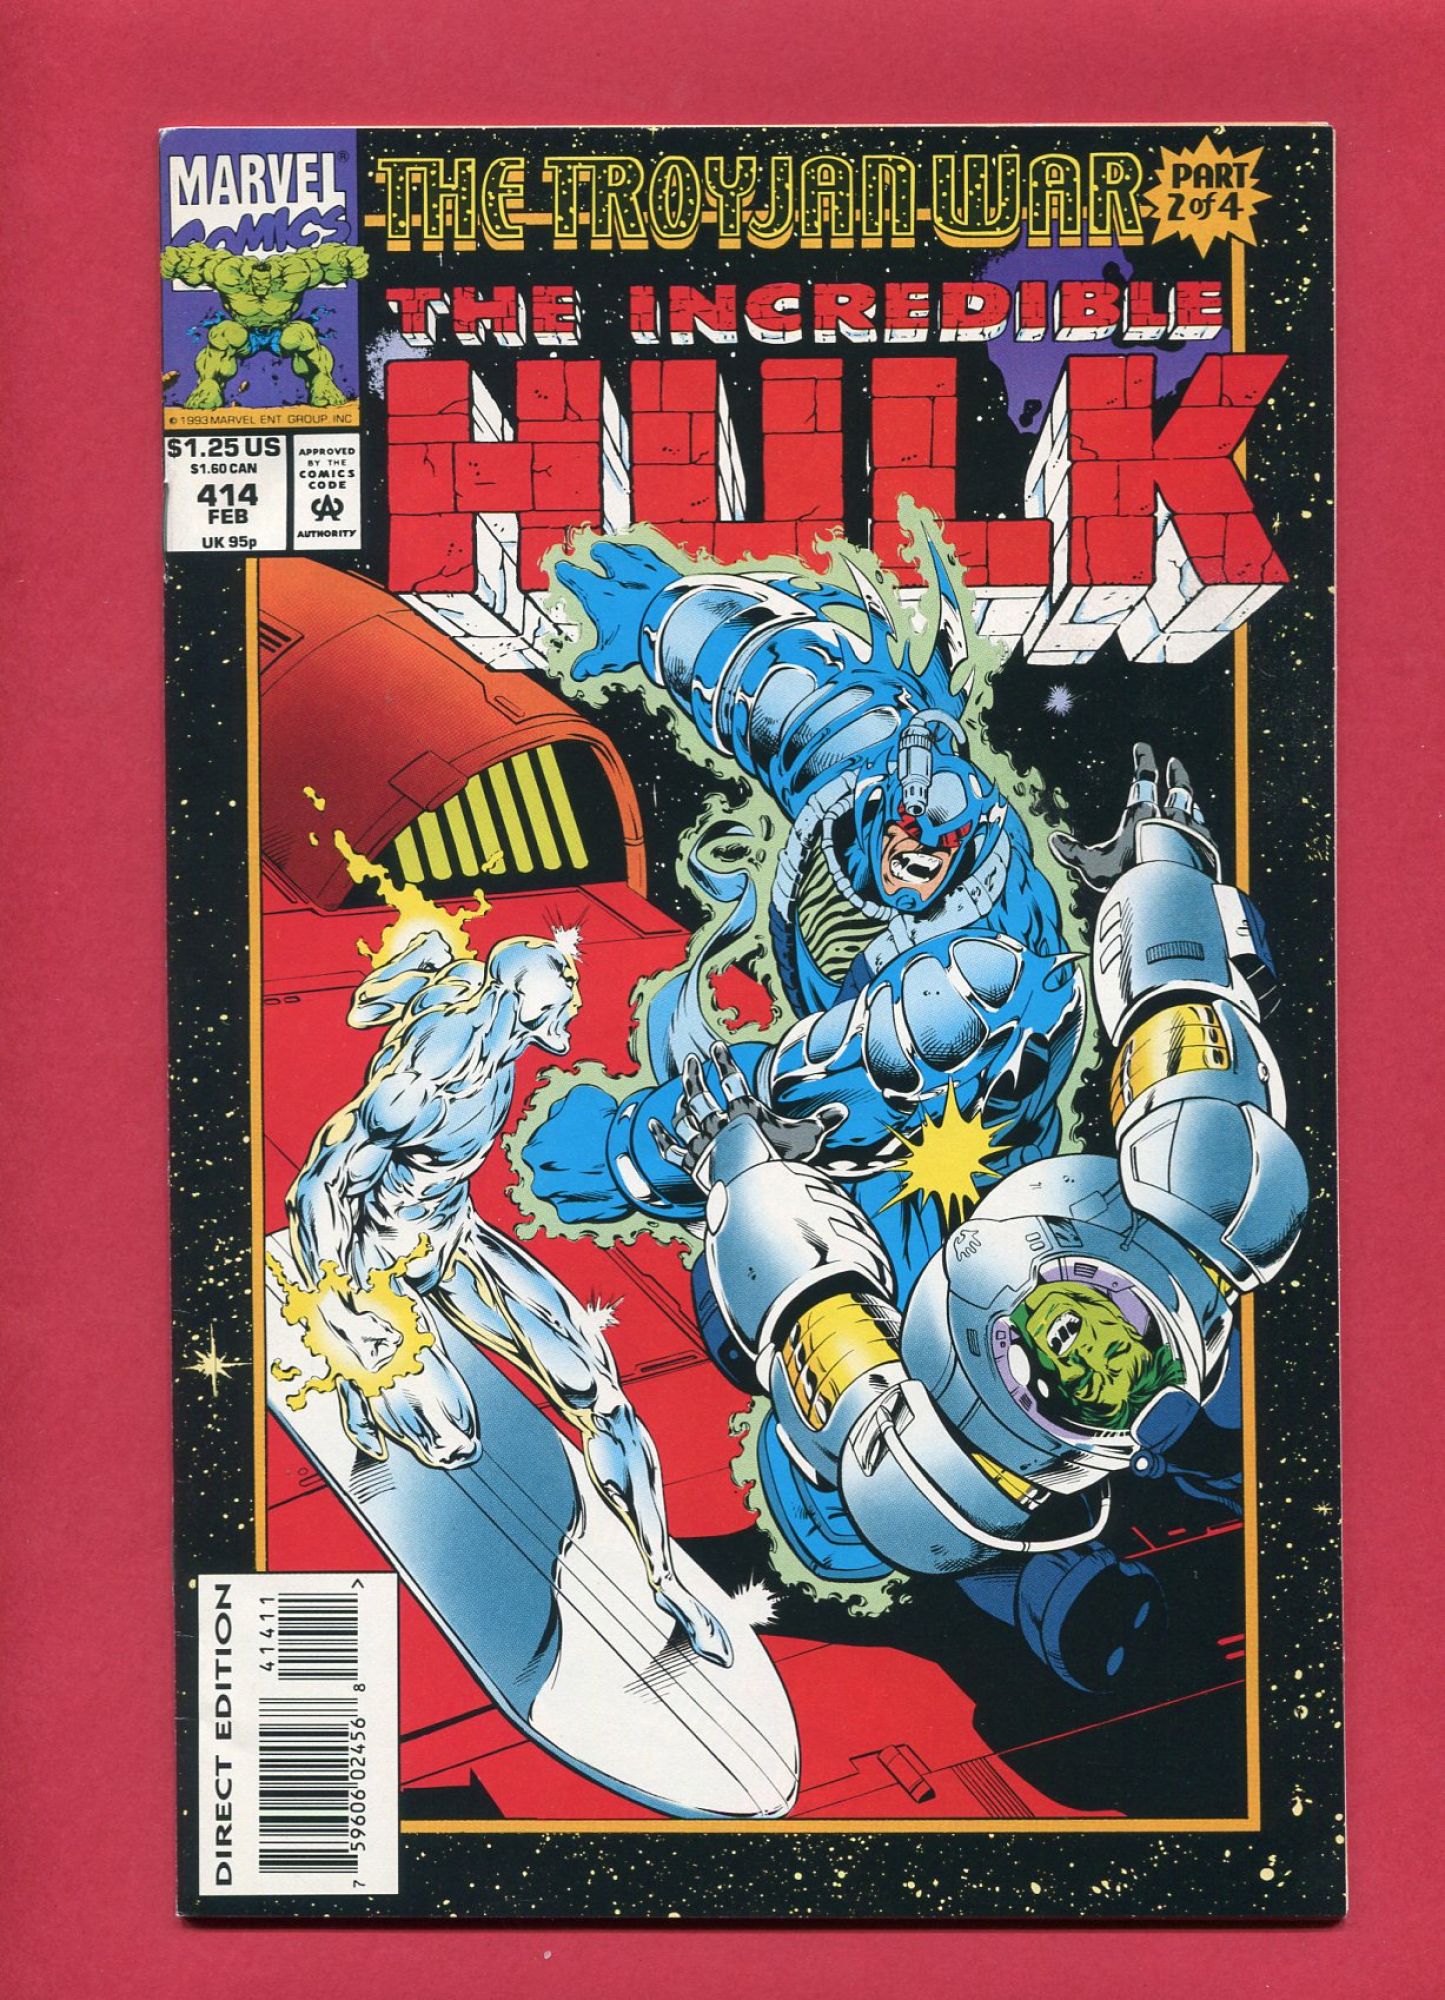 Incredible Hulk #414, Feb 1994, 